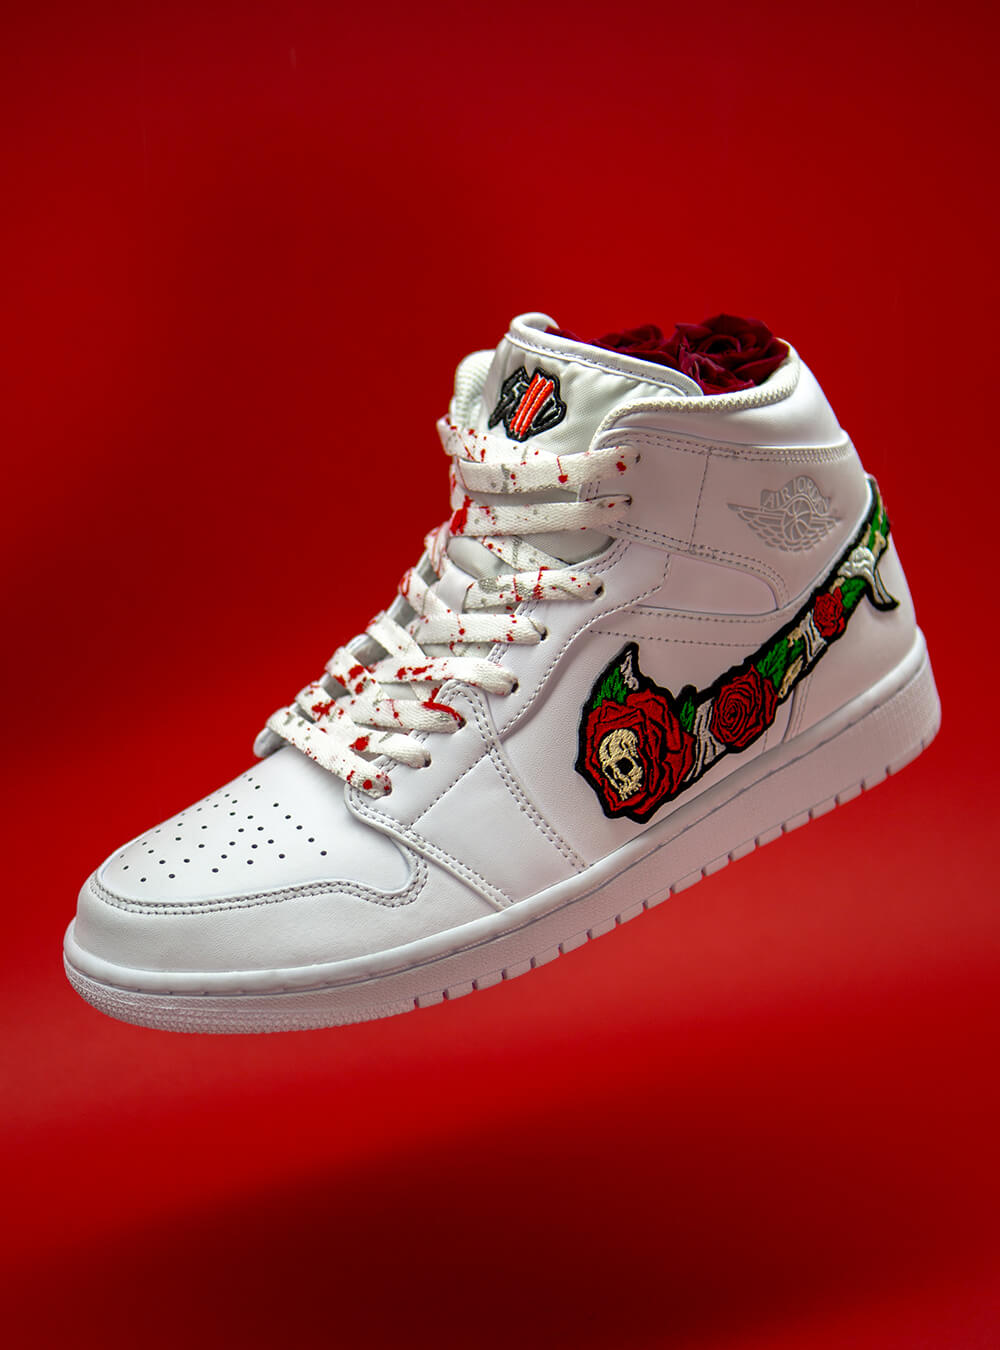 Ulv i fåretøj kompleksitet strømper Skull n' Roses AIR Jordan 1 white Custom sneakers – stillalive